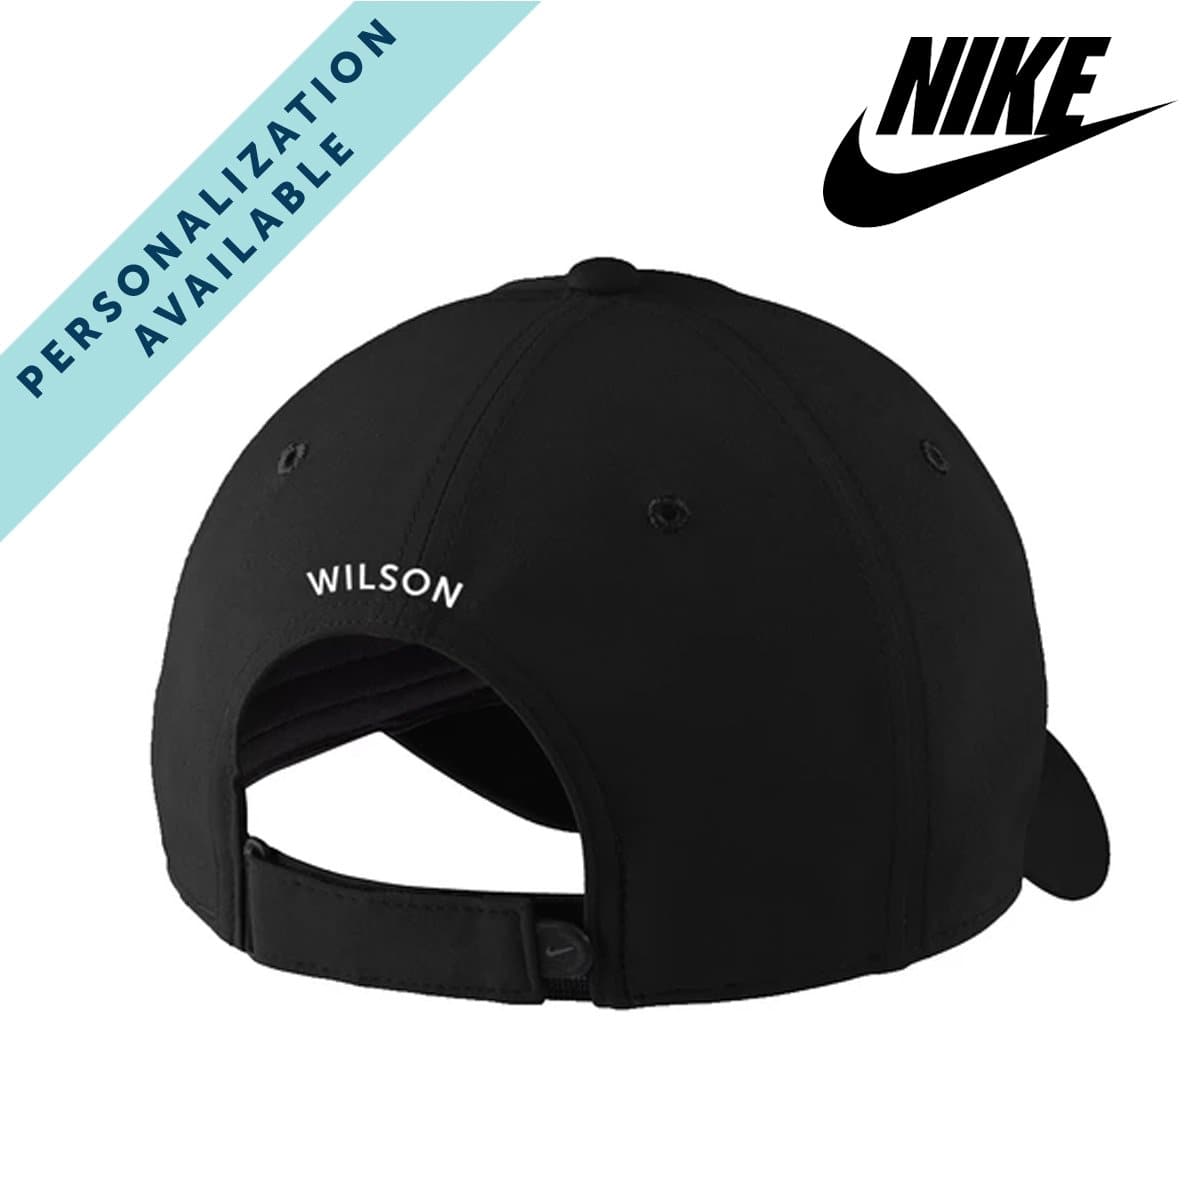 Kappa Alpha Alumni Nike Dri-FIT Performance Hat | Kappa Alpha Order | Headwear > Billed hats